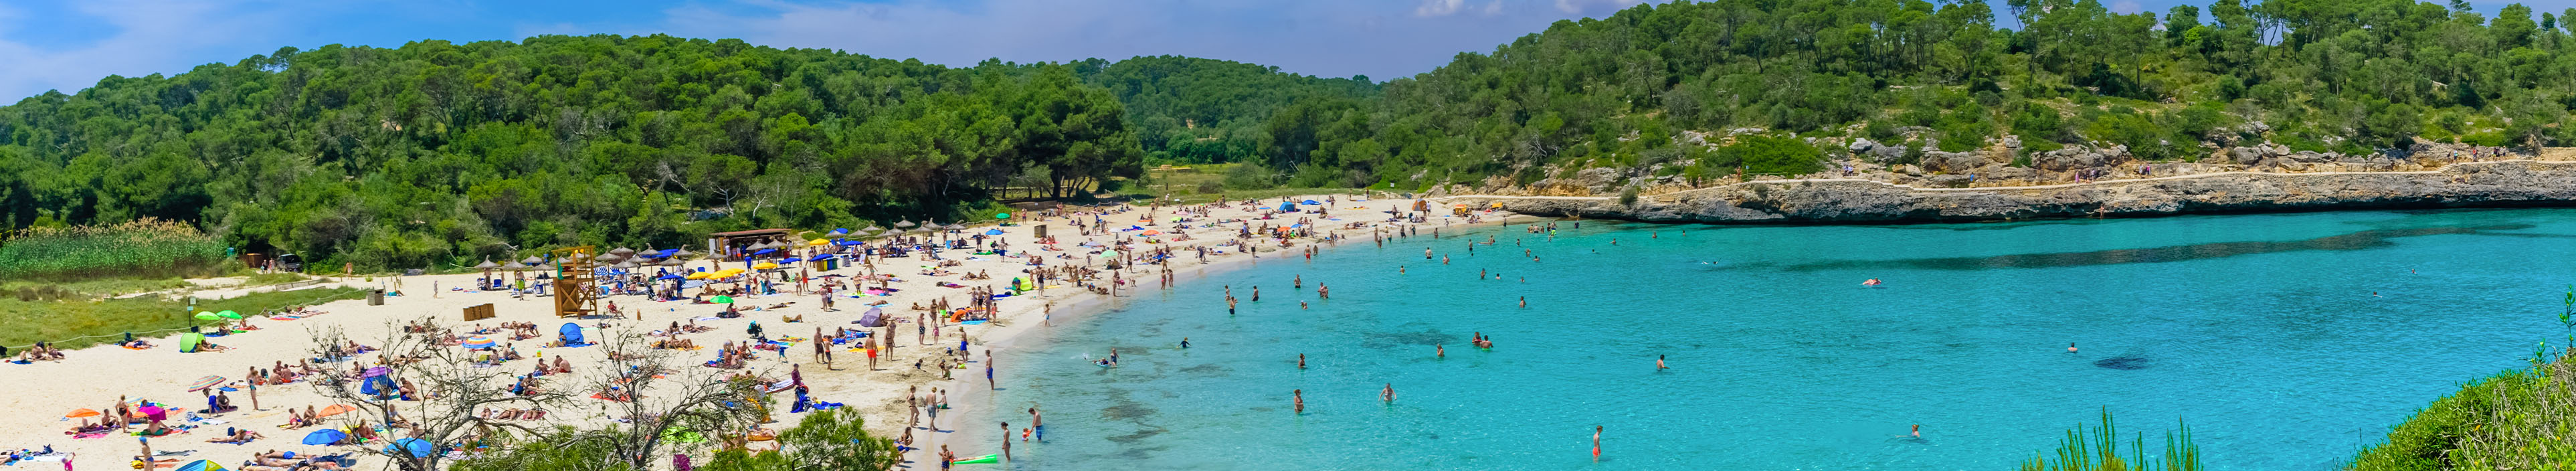 Bucht auf Mallorca mit türkisem Meer und badenden Personen